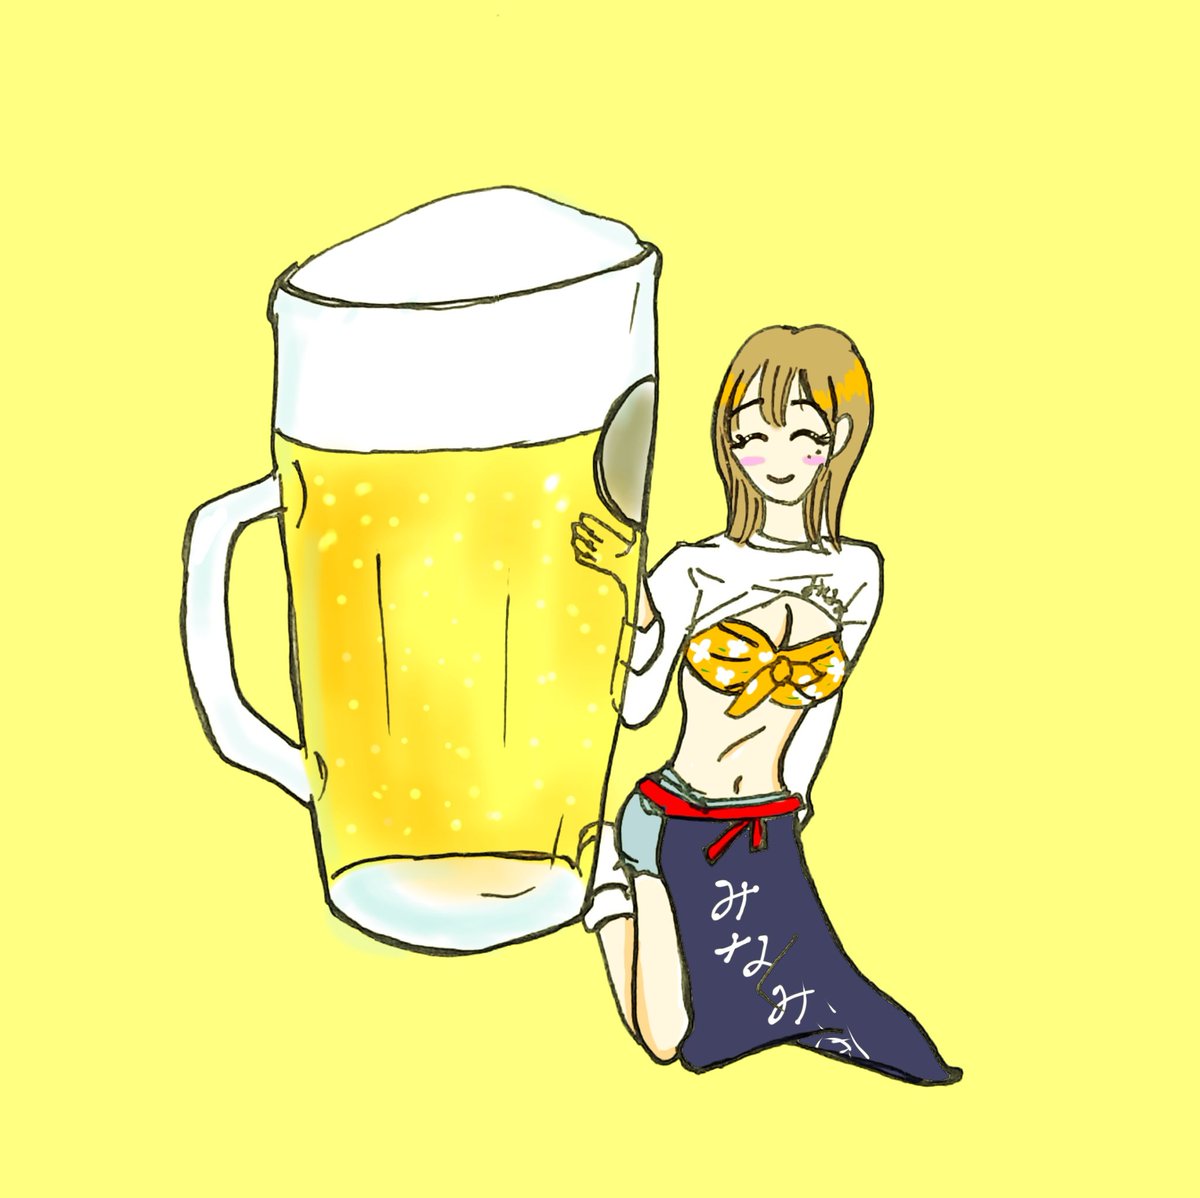 ビールといえば篠原みなみちゃん😆ビールの日ということで居酒屋みなみ酒の店員さんを描きました🍻 #篠原みなみ #ビールの日